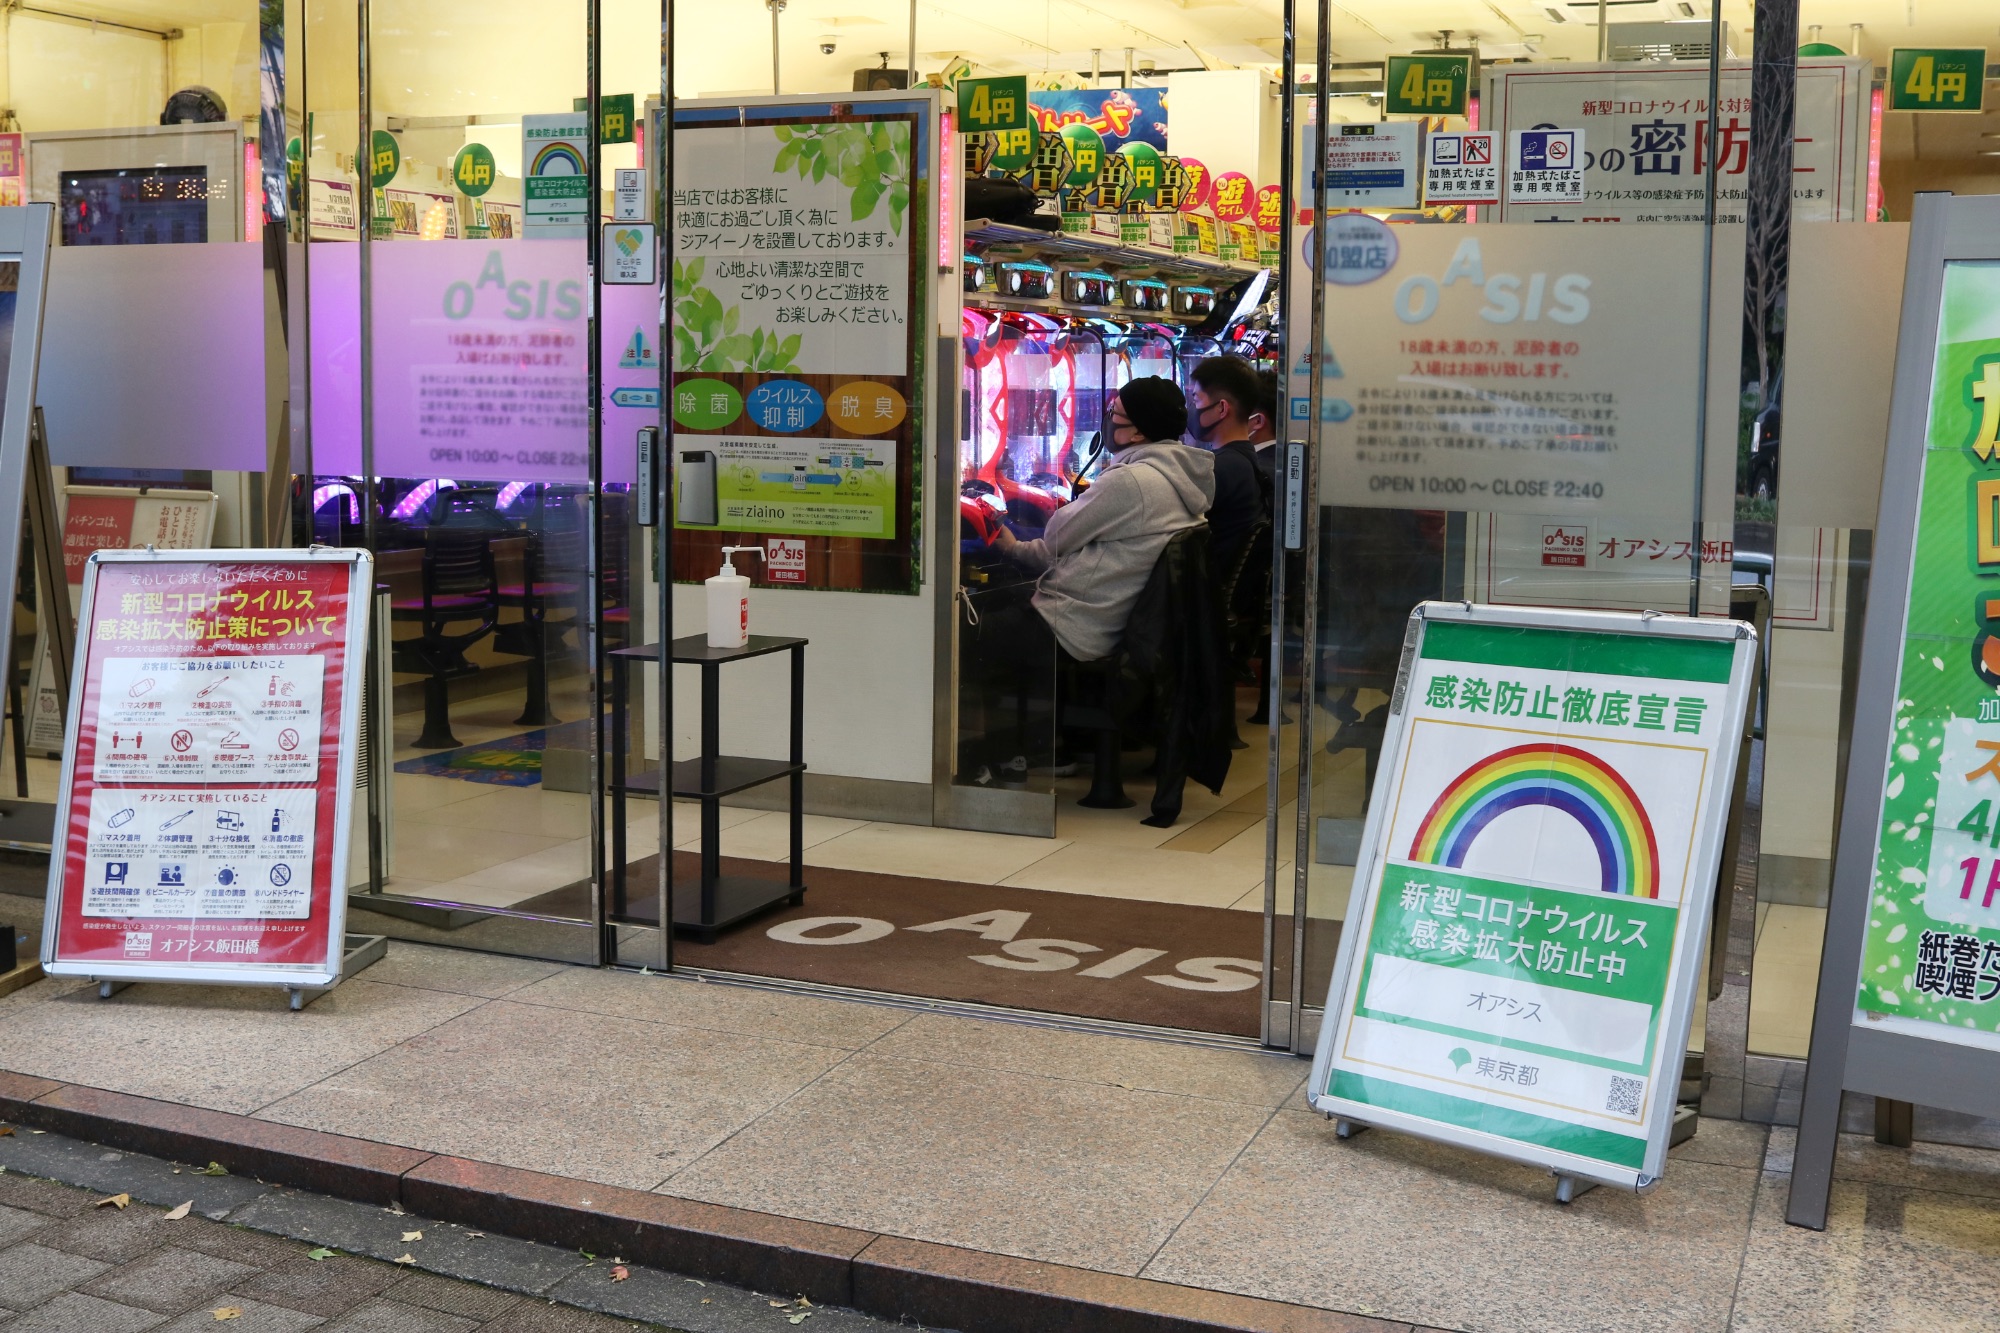 Das Glücksspiel geht weiter: Eine Pachinko-Halle in Tokio am 3. Dezember 2020. Am Eingang wird auf die Schutzmassnahmen aufmerksam gemacht.